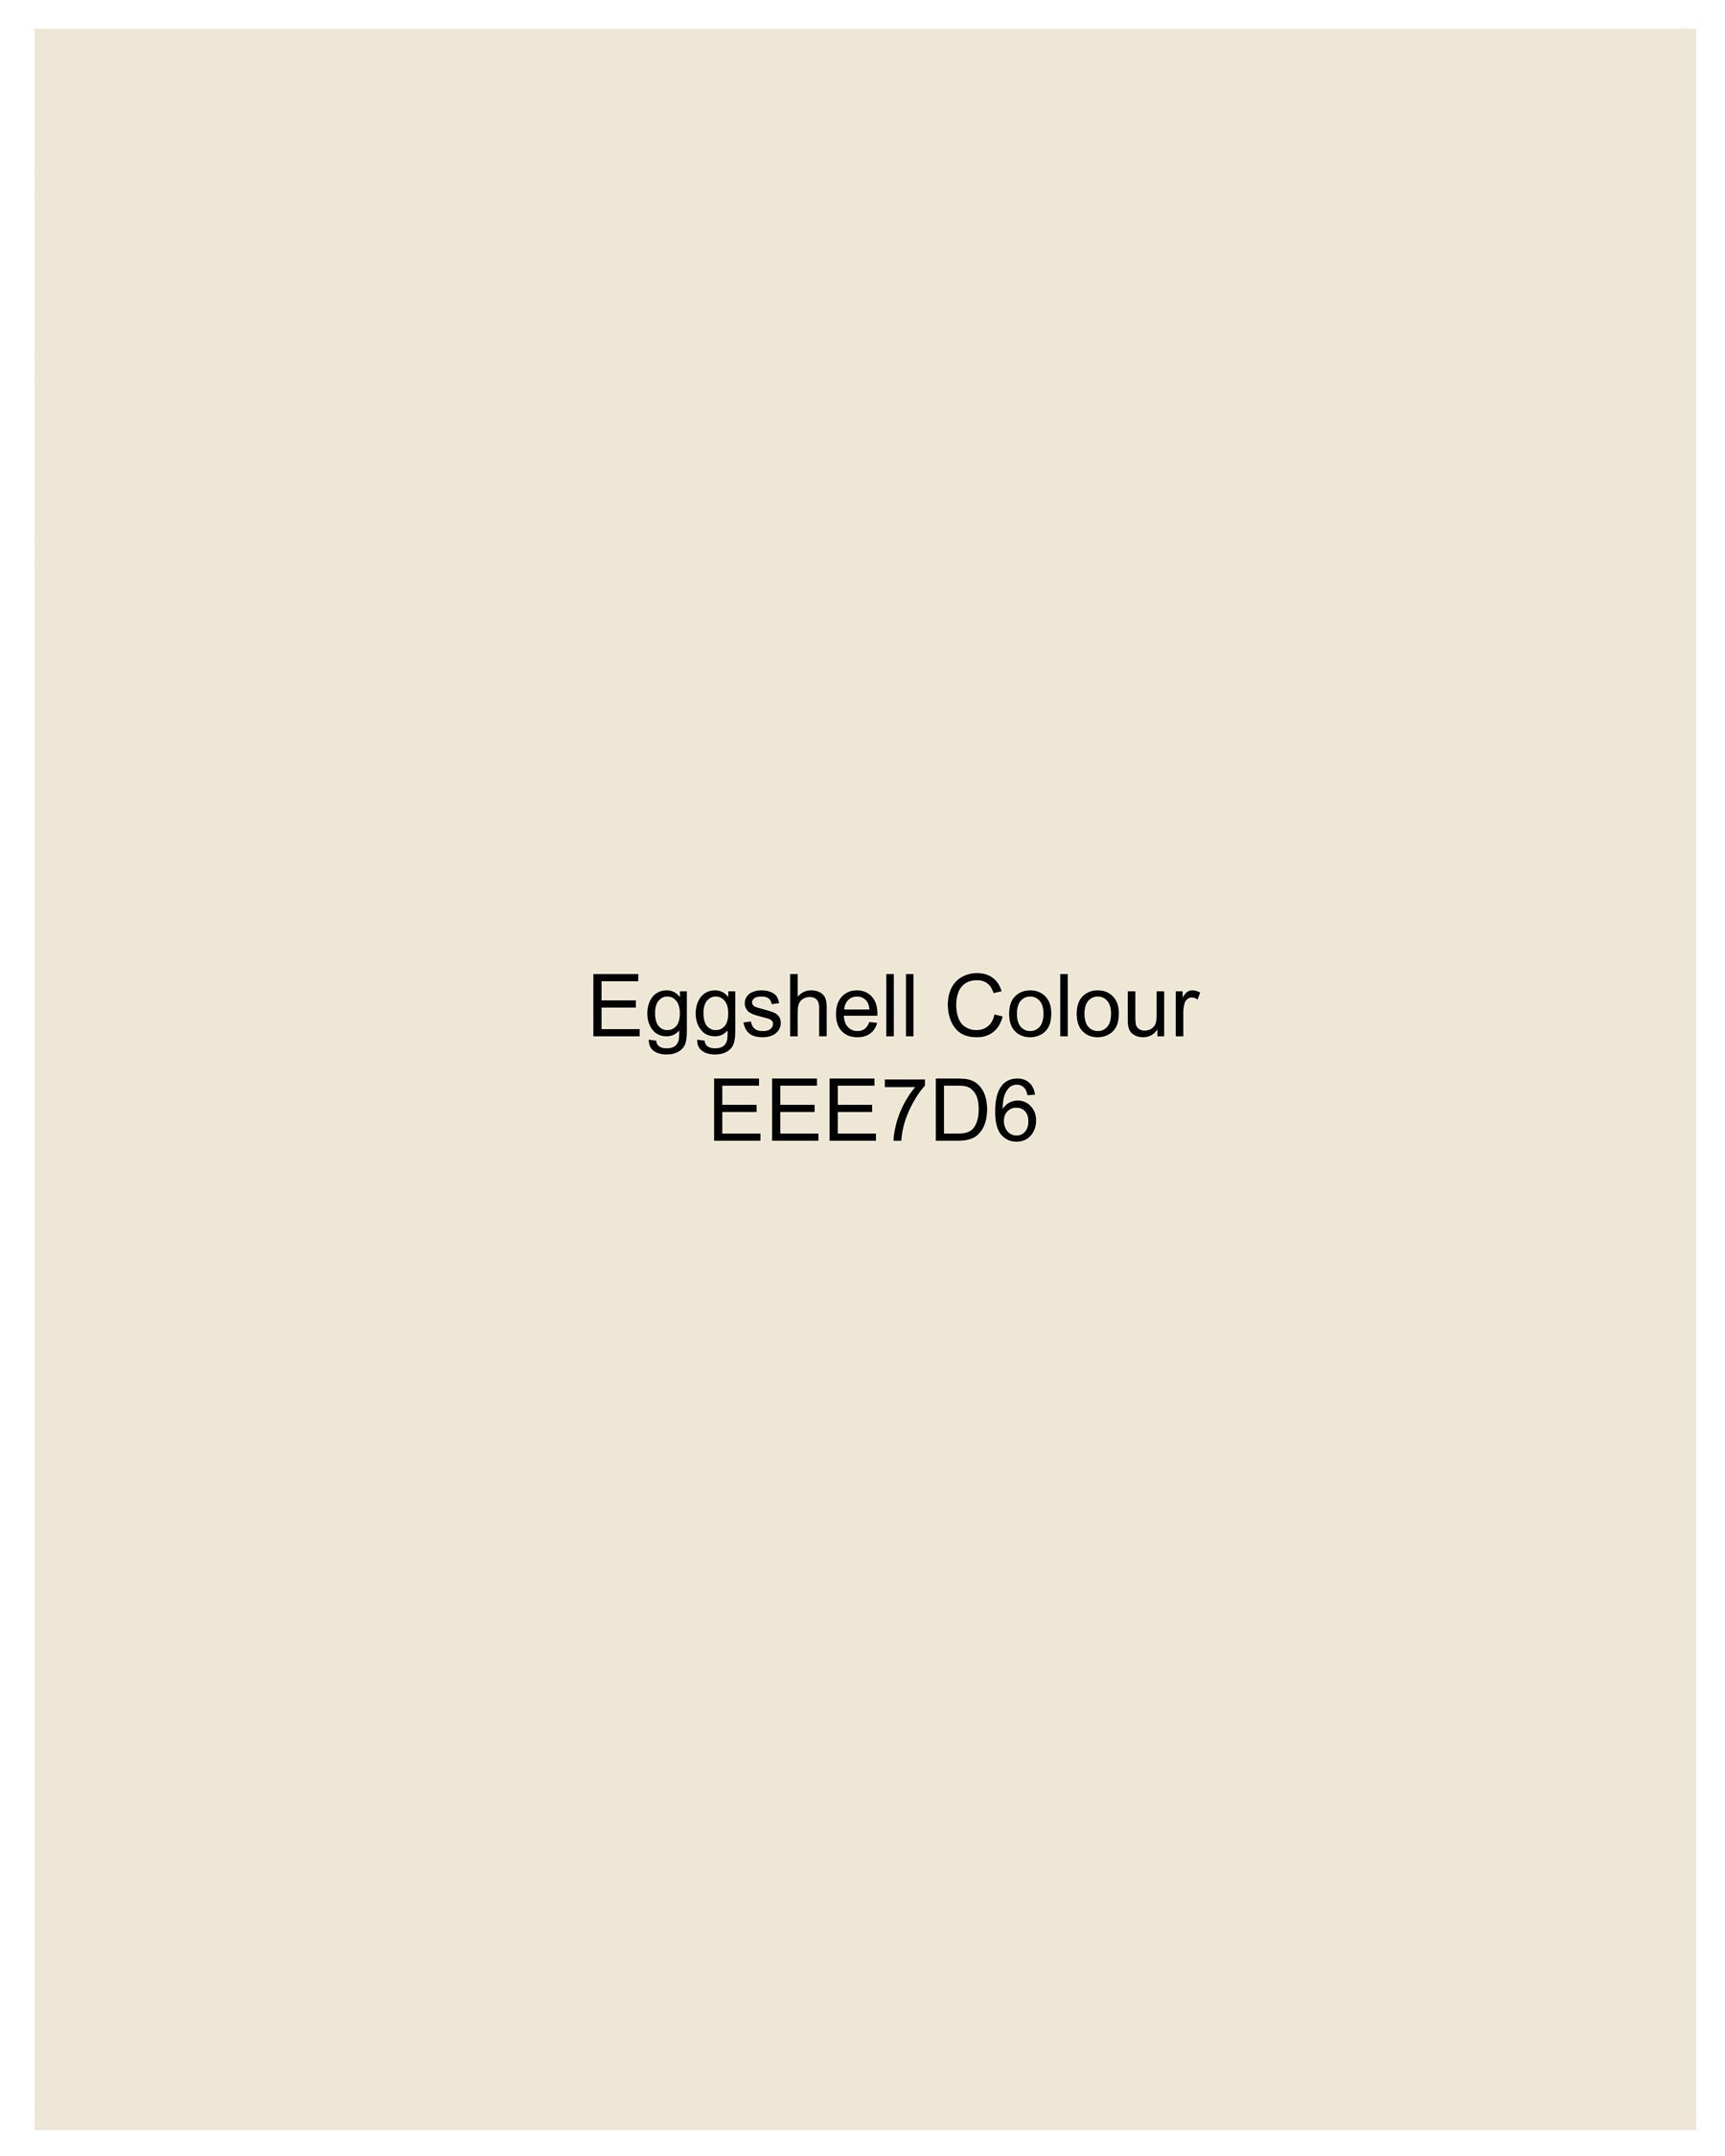 Eggshell Cream Premium Velvet Designer Nehru Jacket  WC2207-36, WC2207-38, WC2207-40, WC2207-42, WC2207-44, WC2207-46, WC2207-48, WC2207-50, WC2207-52, WC2207-54, WC2207-56, WC2207-58, WC2207-60